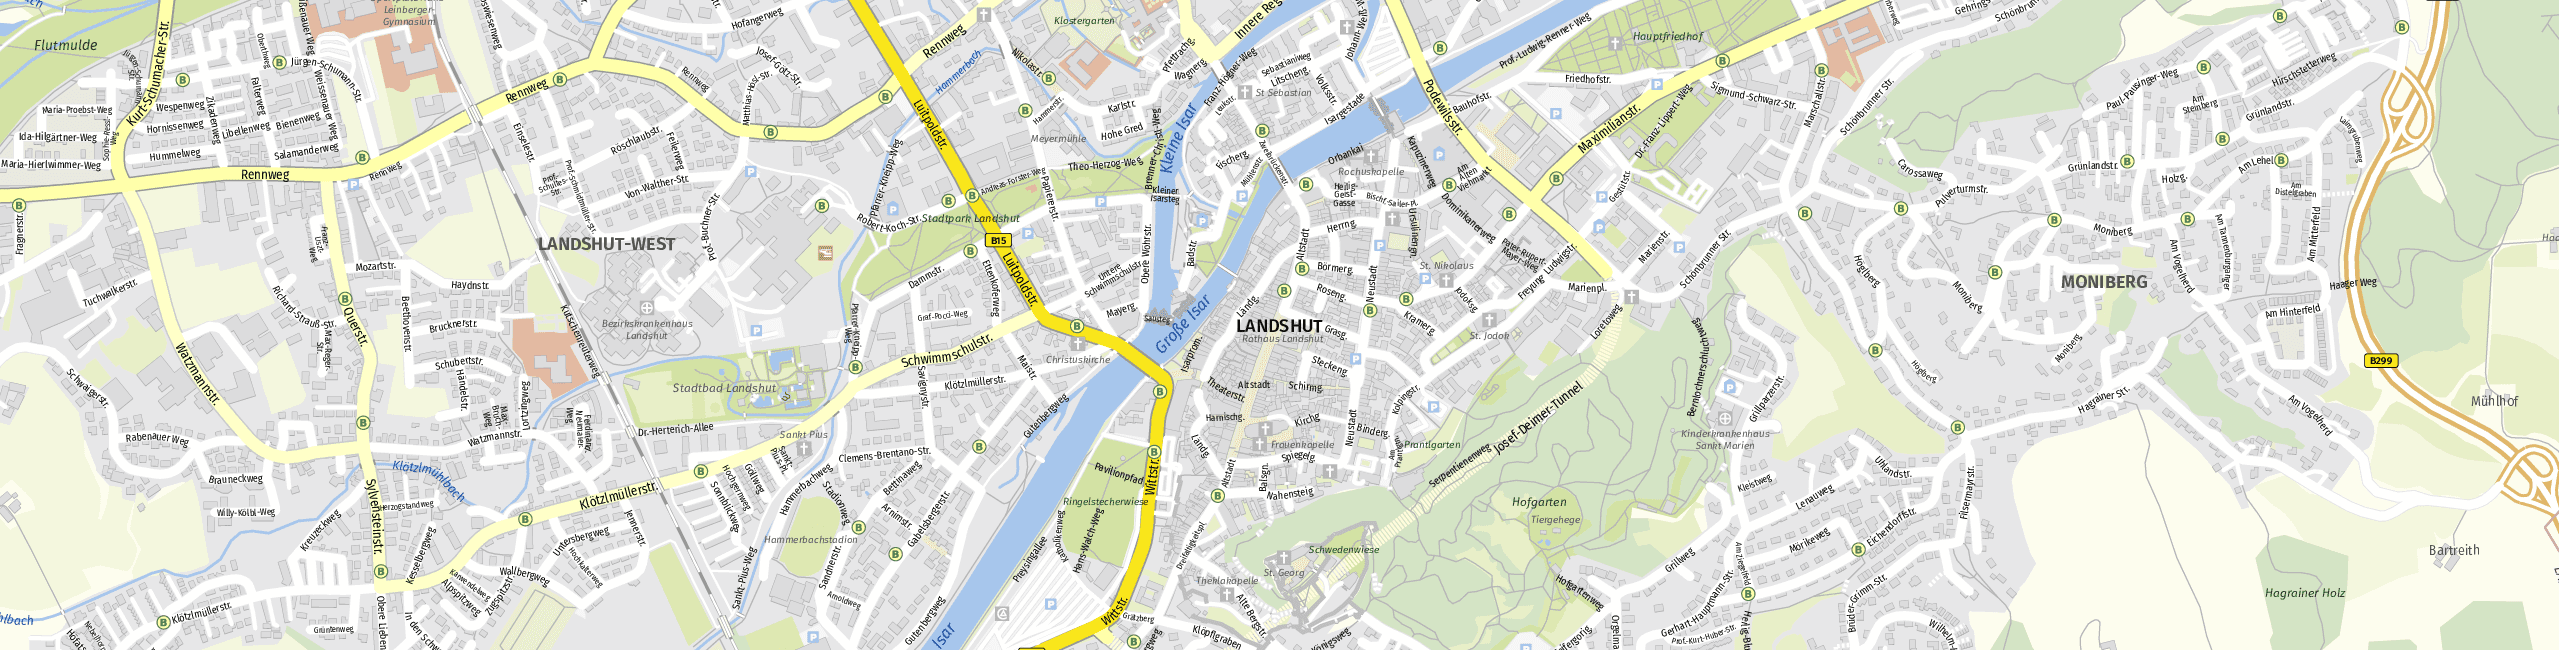 Stadtplan Landshut zum Downloaden.